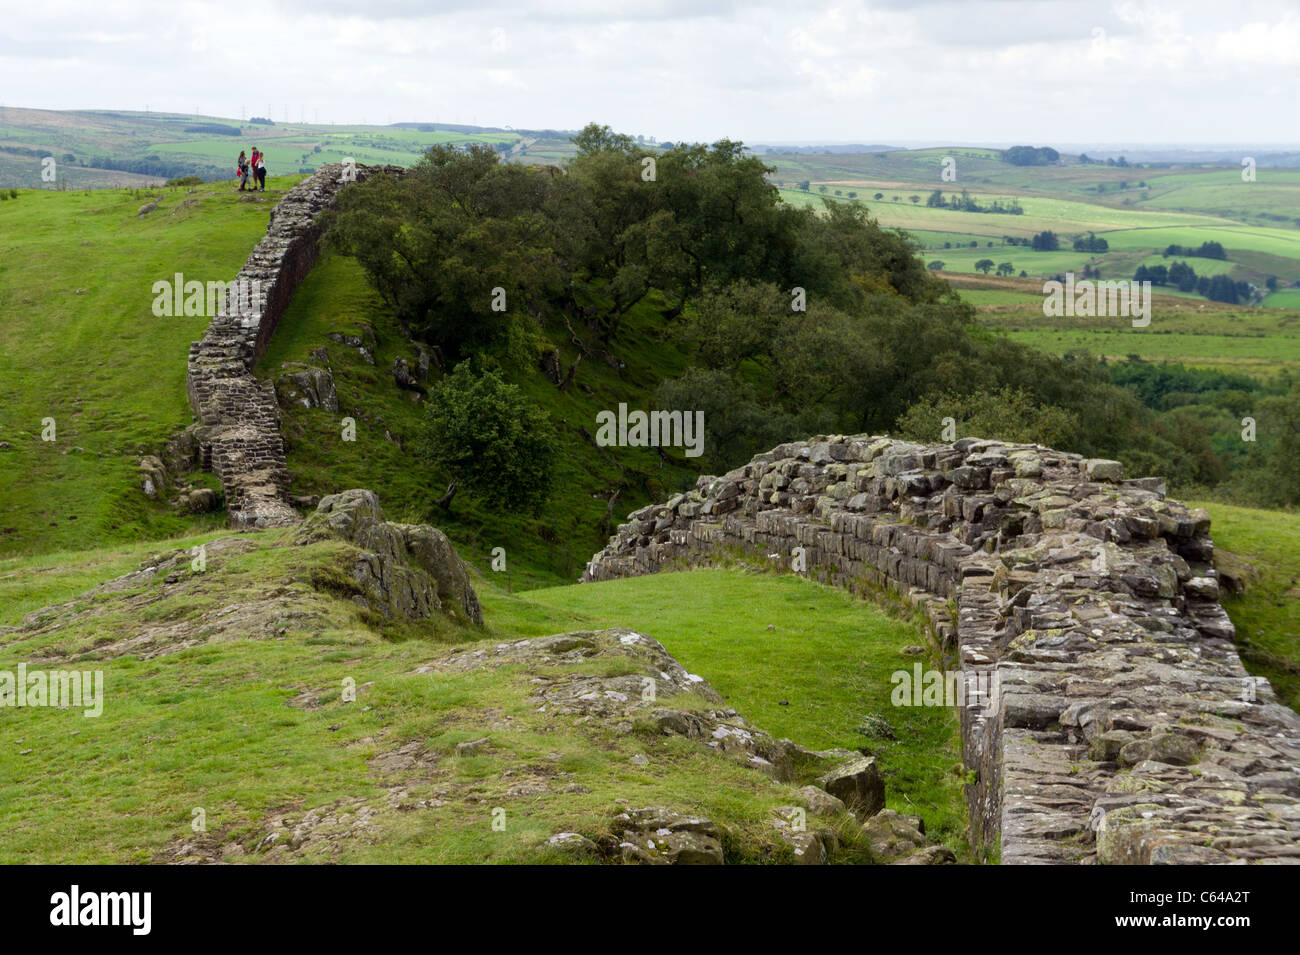 Mur d'Hadrien, Walltown rochers escarpés, Greenhead, Northumberland, England, UK Banque D'Images